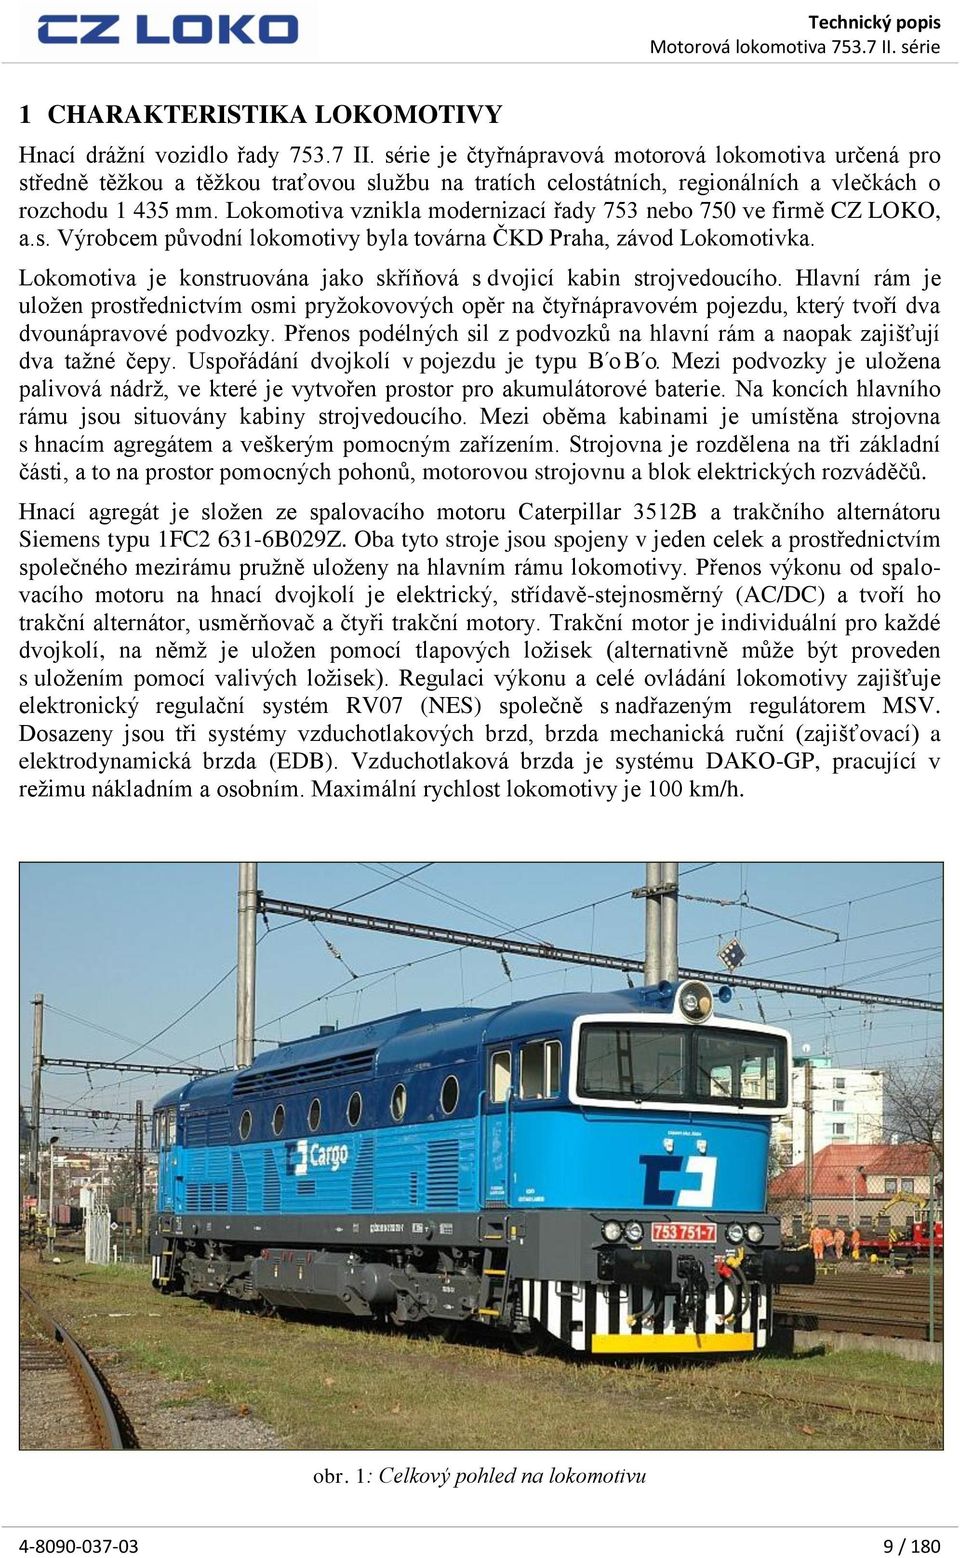 Lokomotiva vznikla modernizací řady 753 nebo 750 ve firmě CZ LOKO, a.s. Výrobcem původní lokomotivy byla továrna ČKD Praha, závod Lokomotivka.